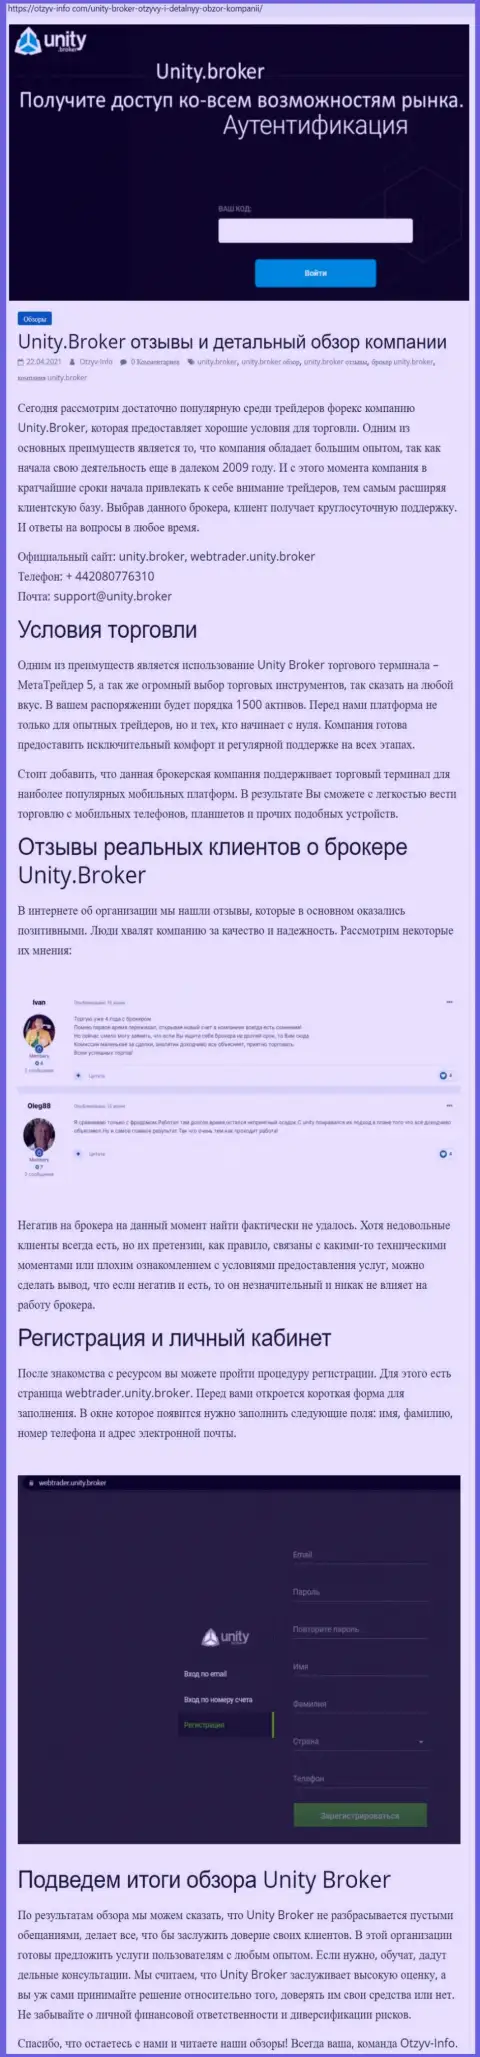 Обзор работы форекс-брокера Юнити Брокер на сайте Otzyv Info Com